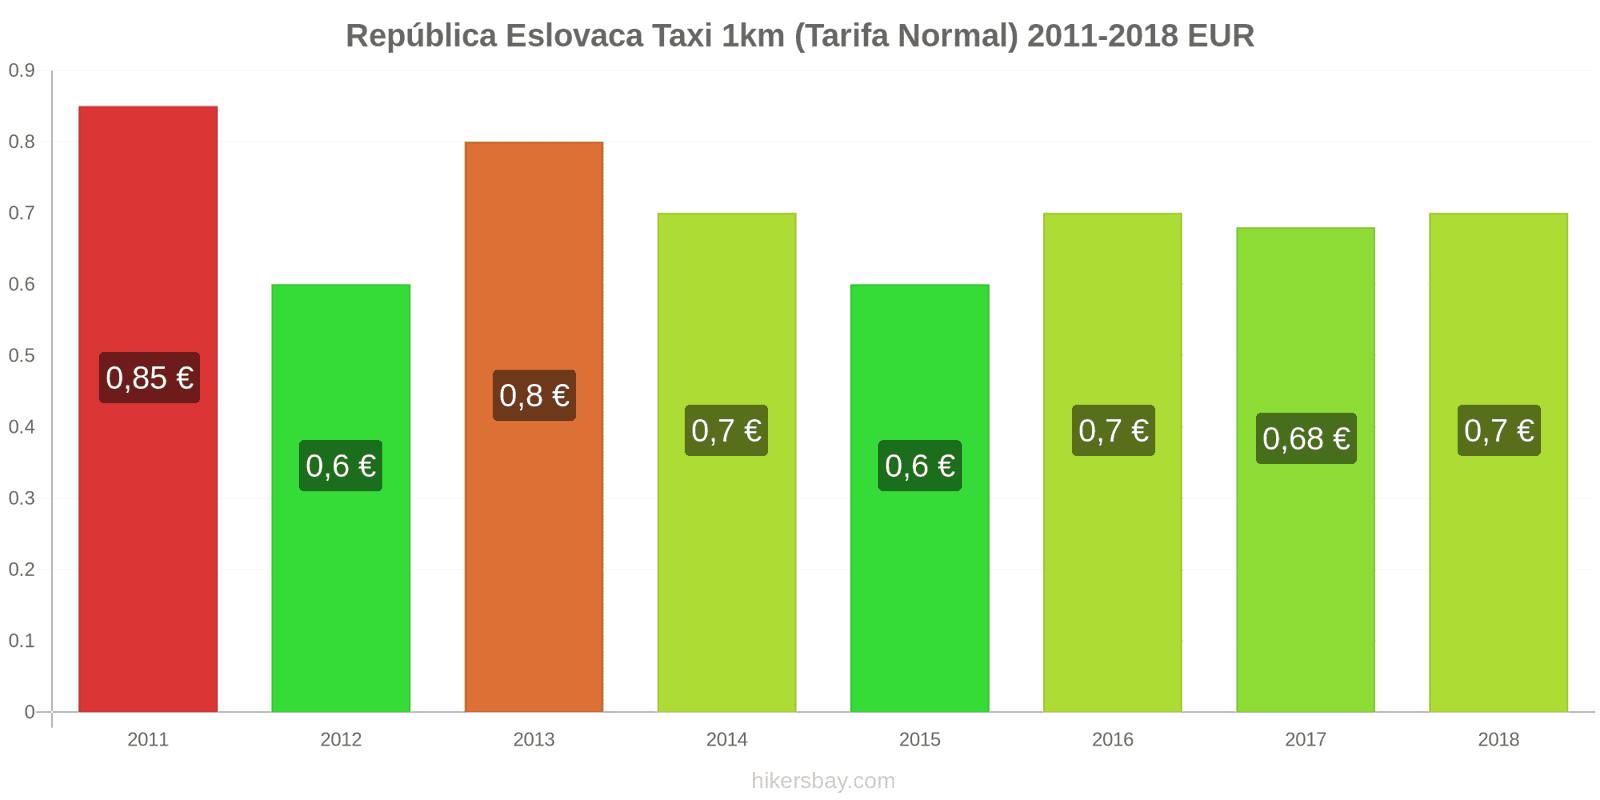 República Eslovaca cambios de precios Taxi 1km (tarifa normal) hikersbay.com